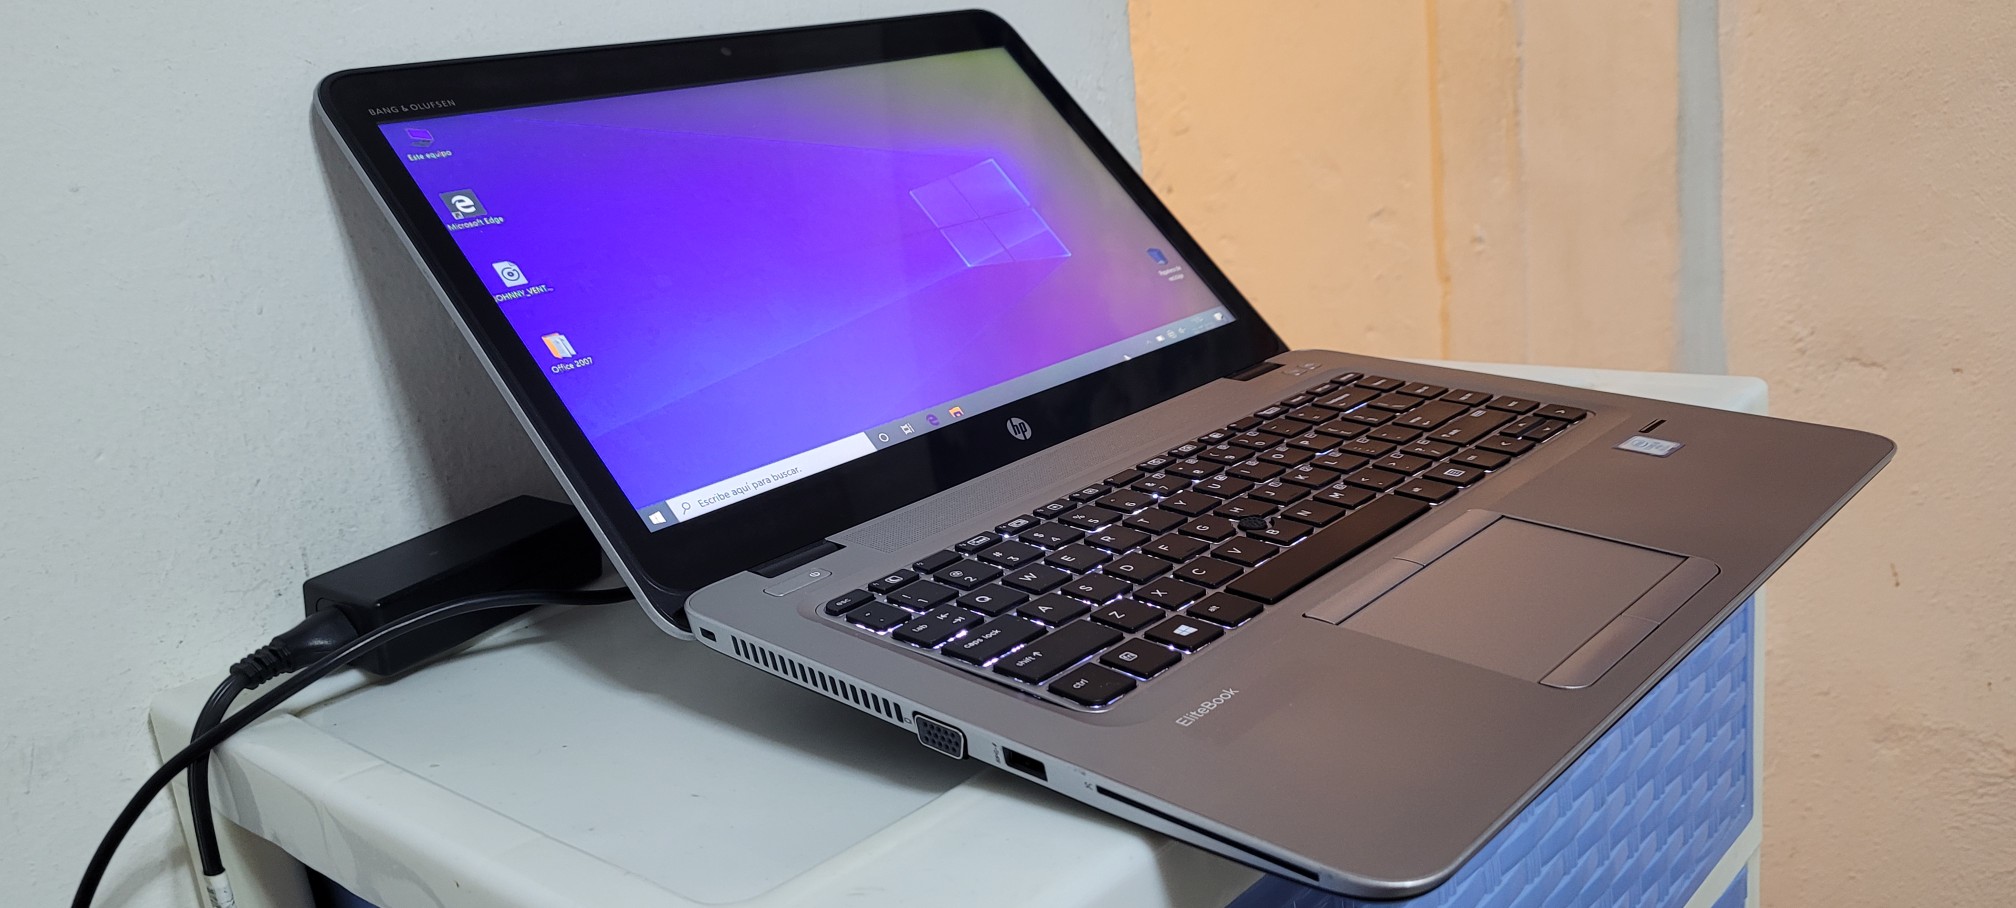 computadoras y laptops - Laptop hp Touch 14 Pulg Core i5 7ma Ram 8gb dd4 Disco 128gb Y 320gb full 1